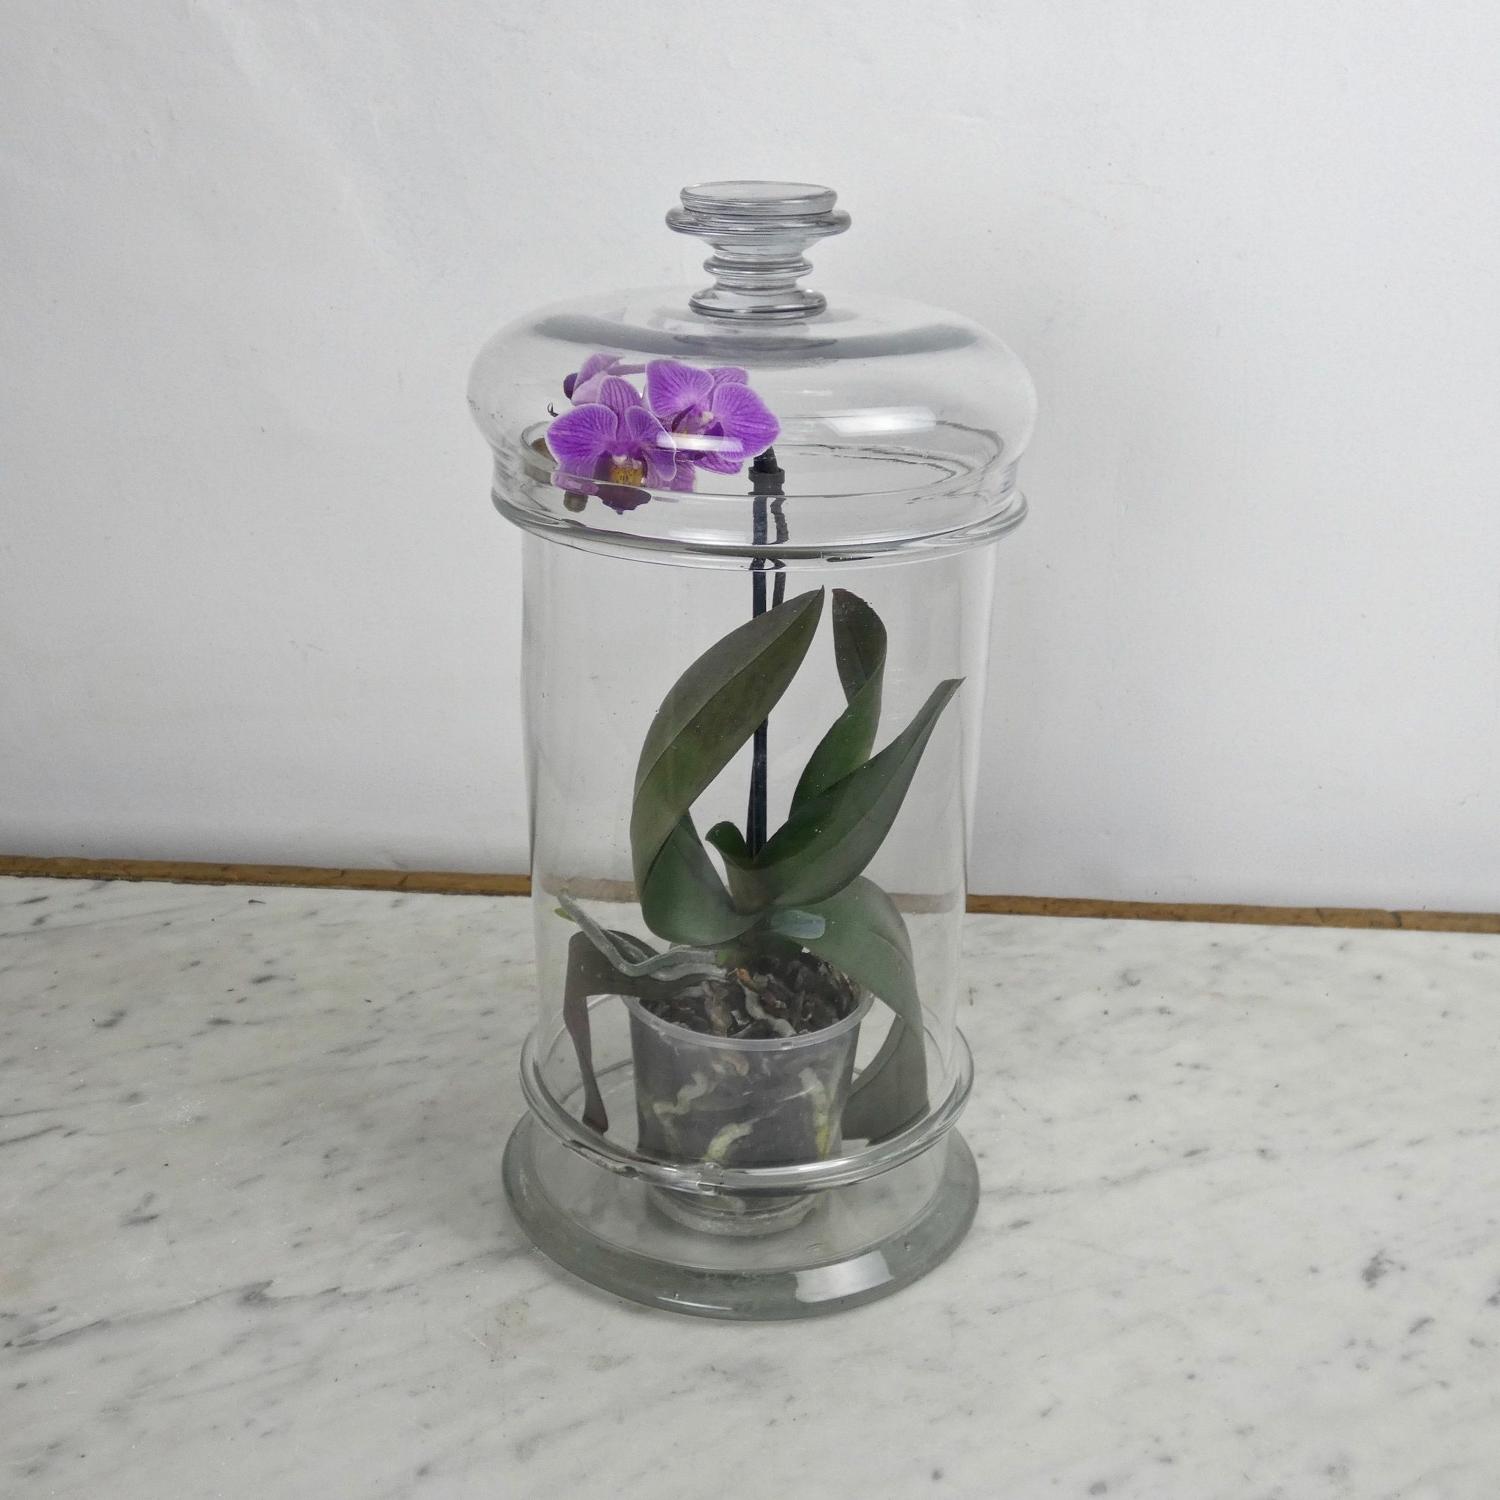 Tall, French glass storage jar